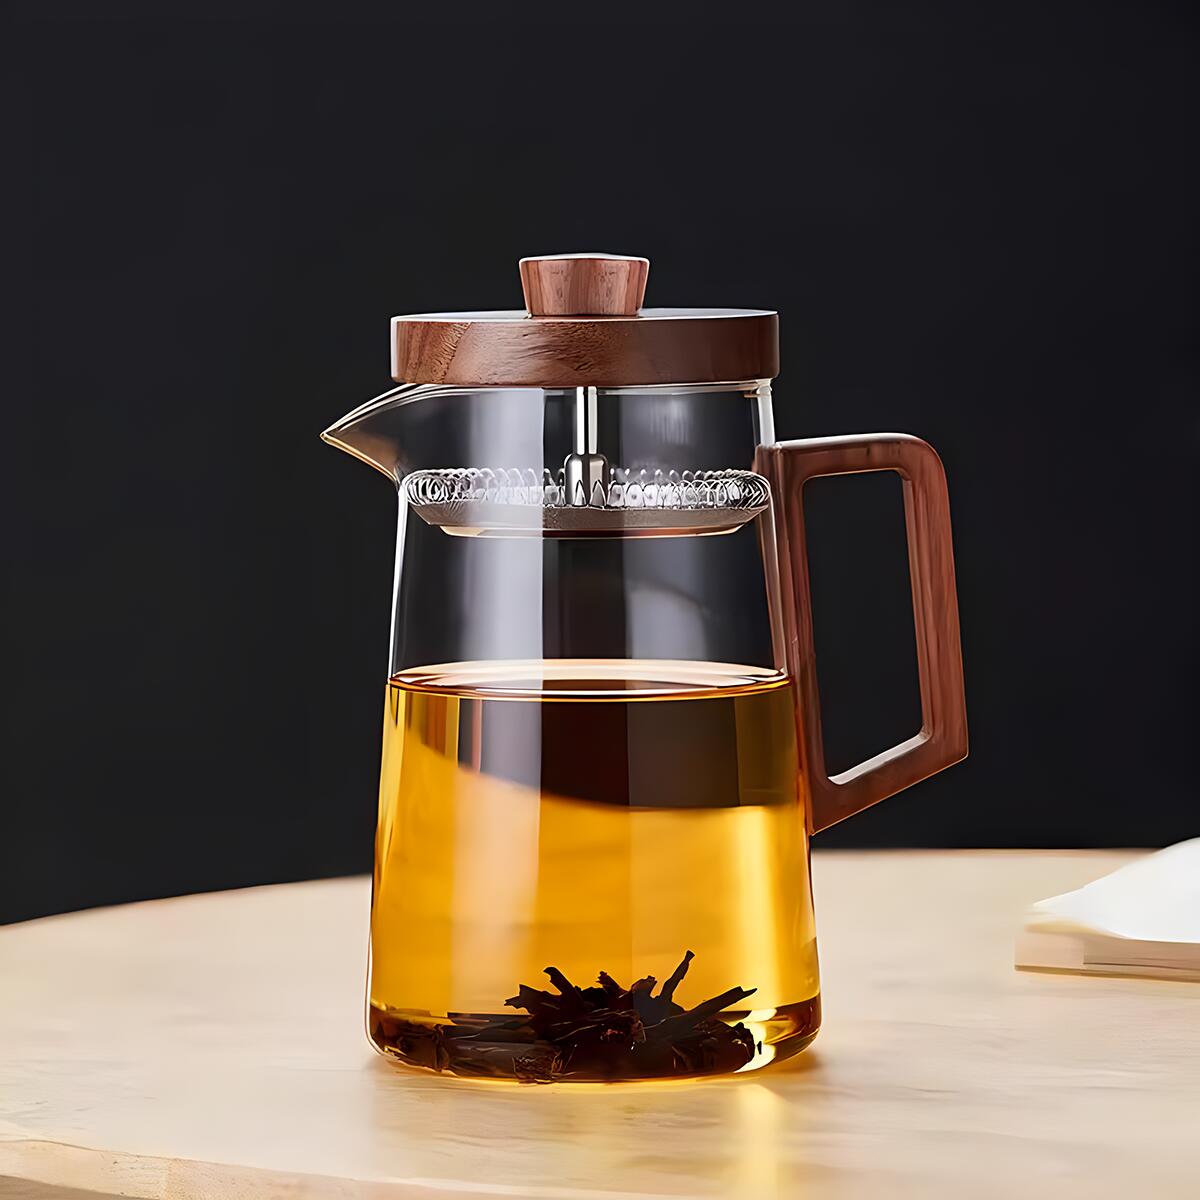 IwaiLoft 耐熱ガラス ティーポット 800ml ヤカン 湯沸かし 木製持ち手 上質な304SUSステンレス製茶こし付き おしゃれ ガ – 茶器・コーヒー用品を選ぶ  - IwaiLoft